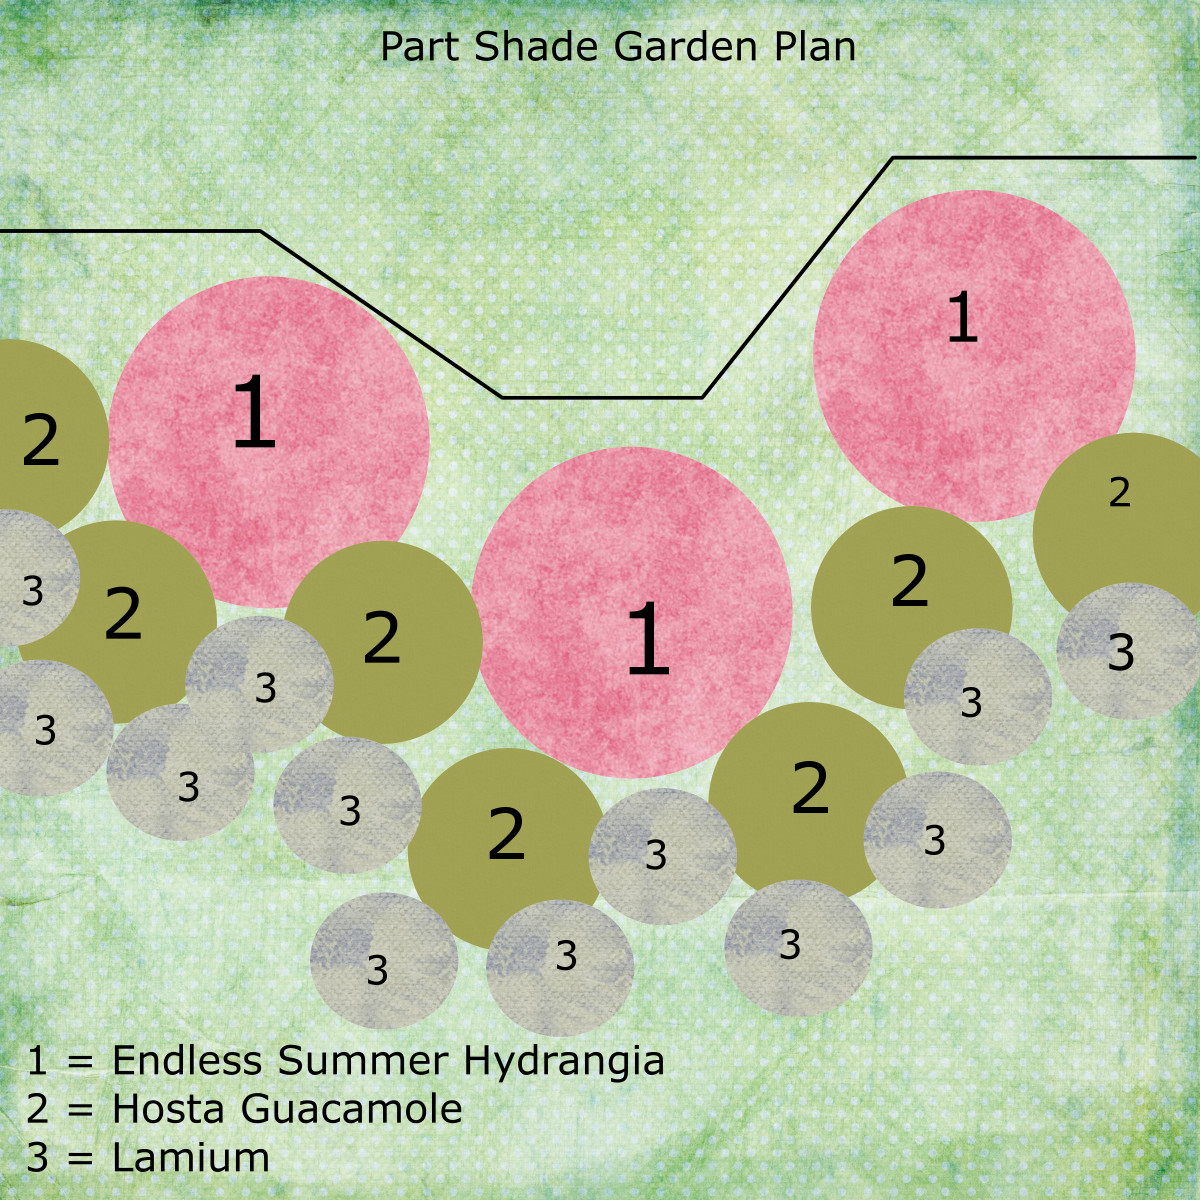 How to Design a Simple Garden Plan | Dengarden